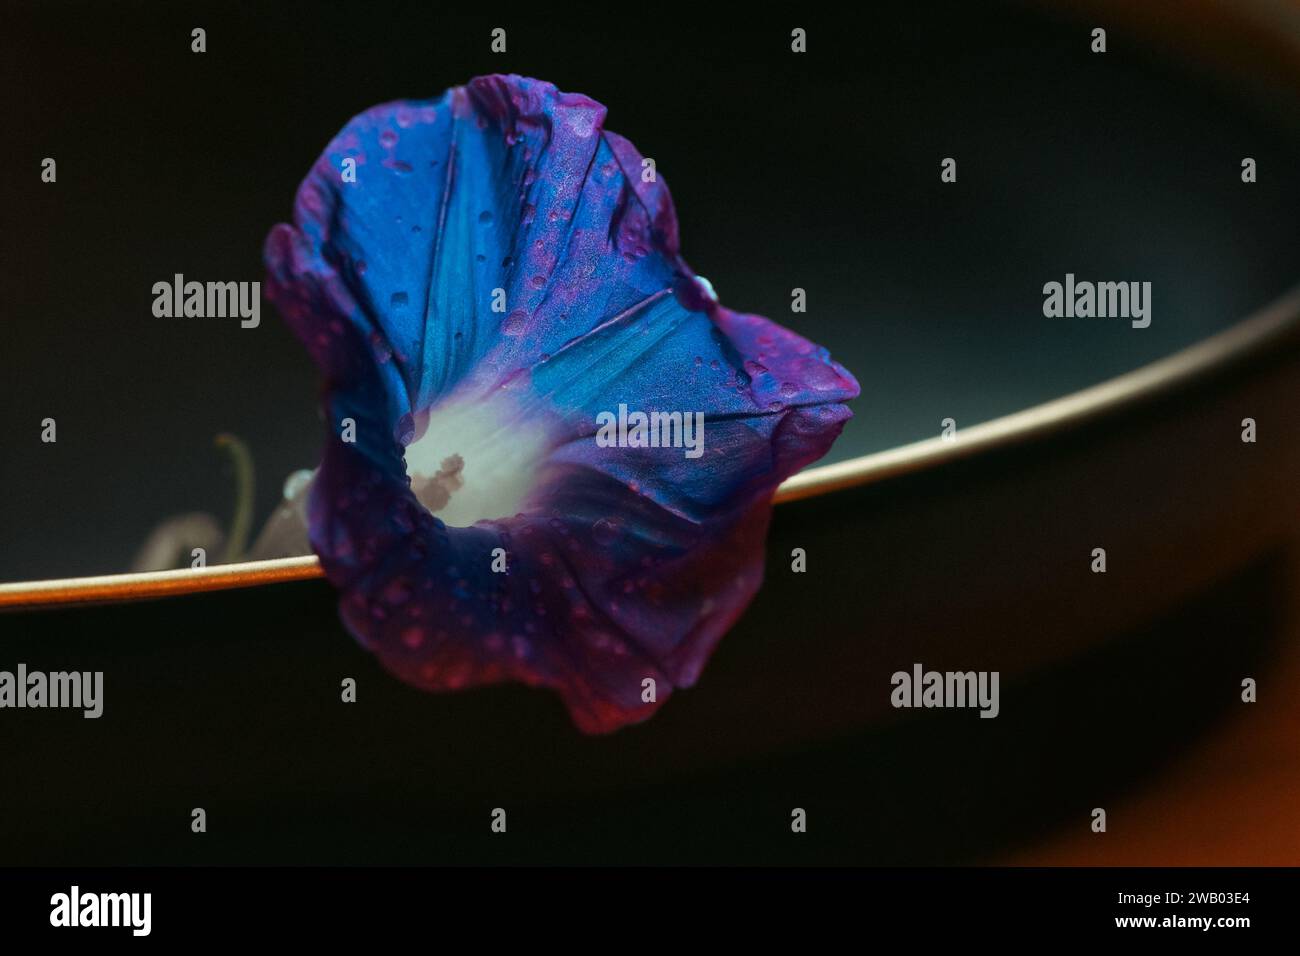 Une fleur bleue vibrante est perchée au sommet d'un bol noir brillant, ajoutant une touche de couleurs vives à la scène Banque D'Images